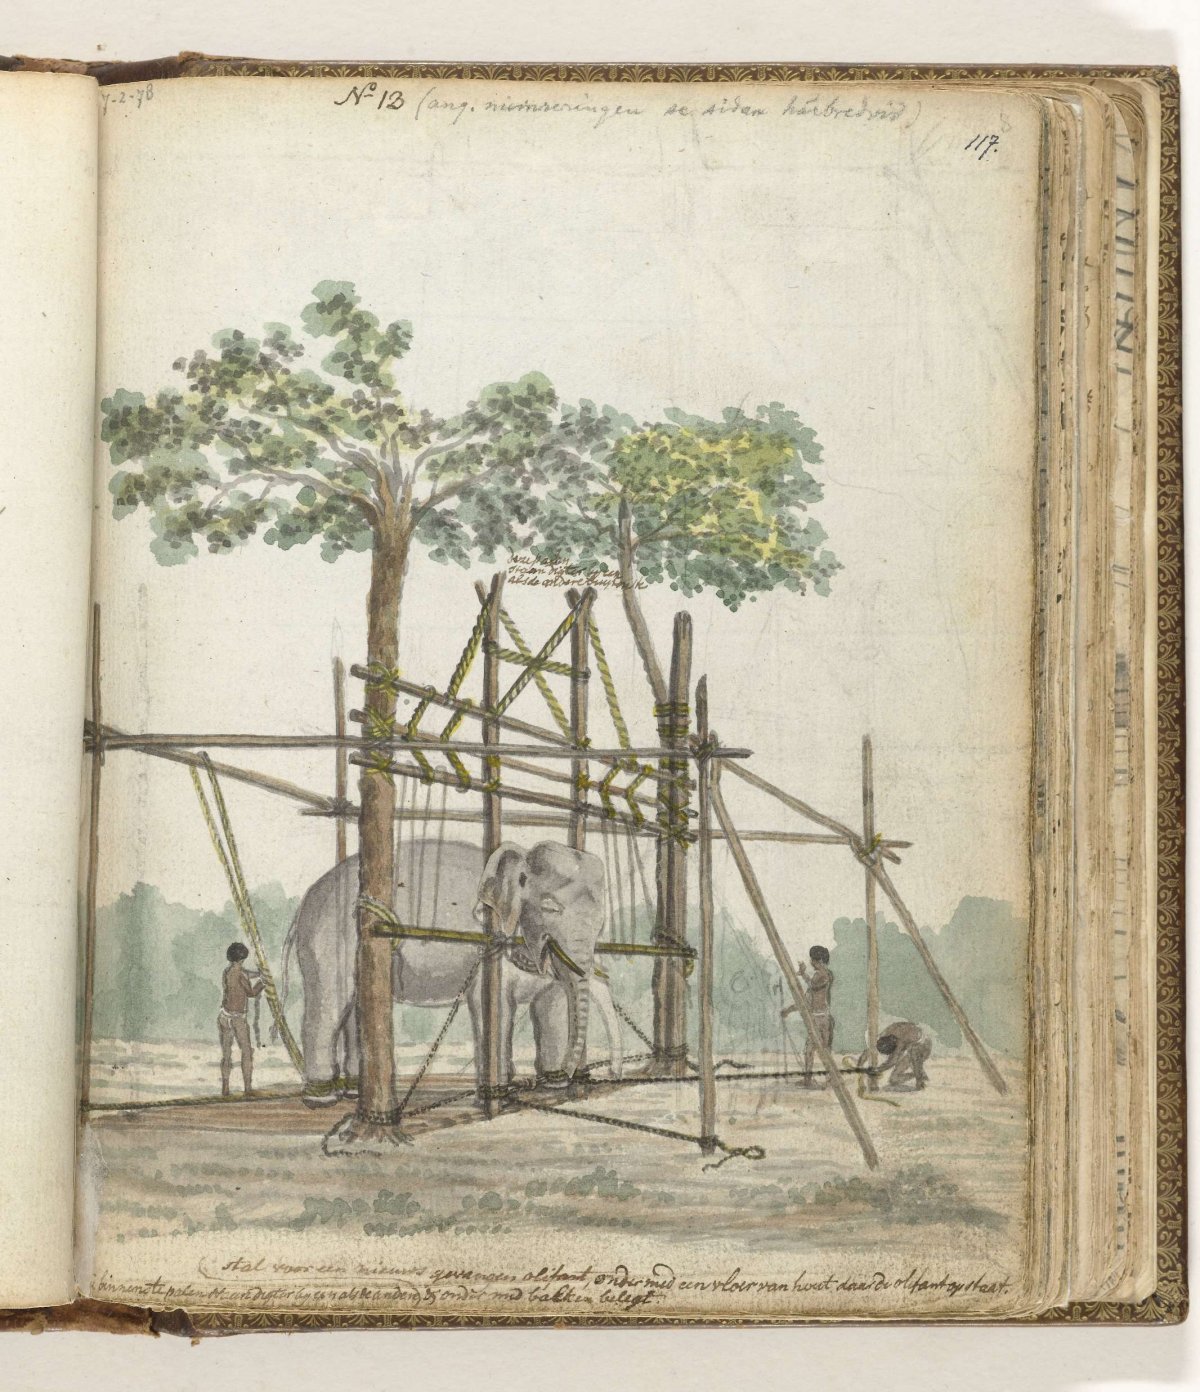 Olifantenstal, Jan Brandes, 1786